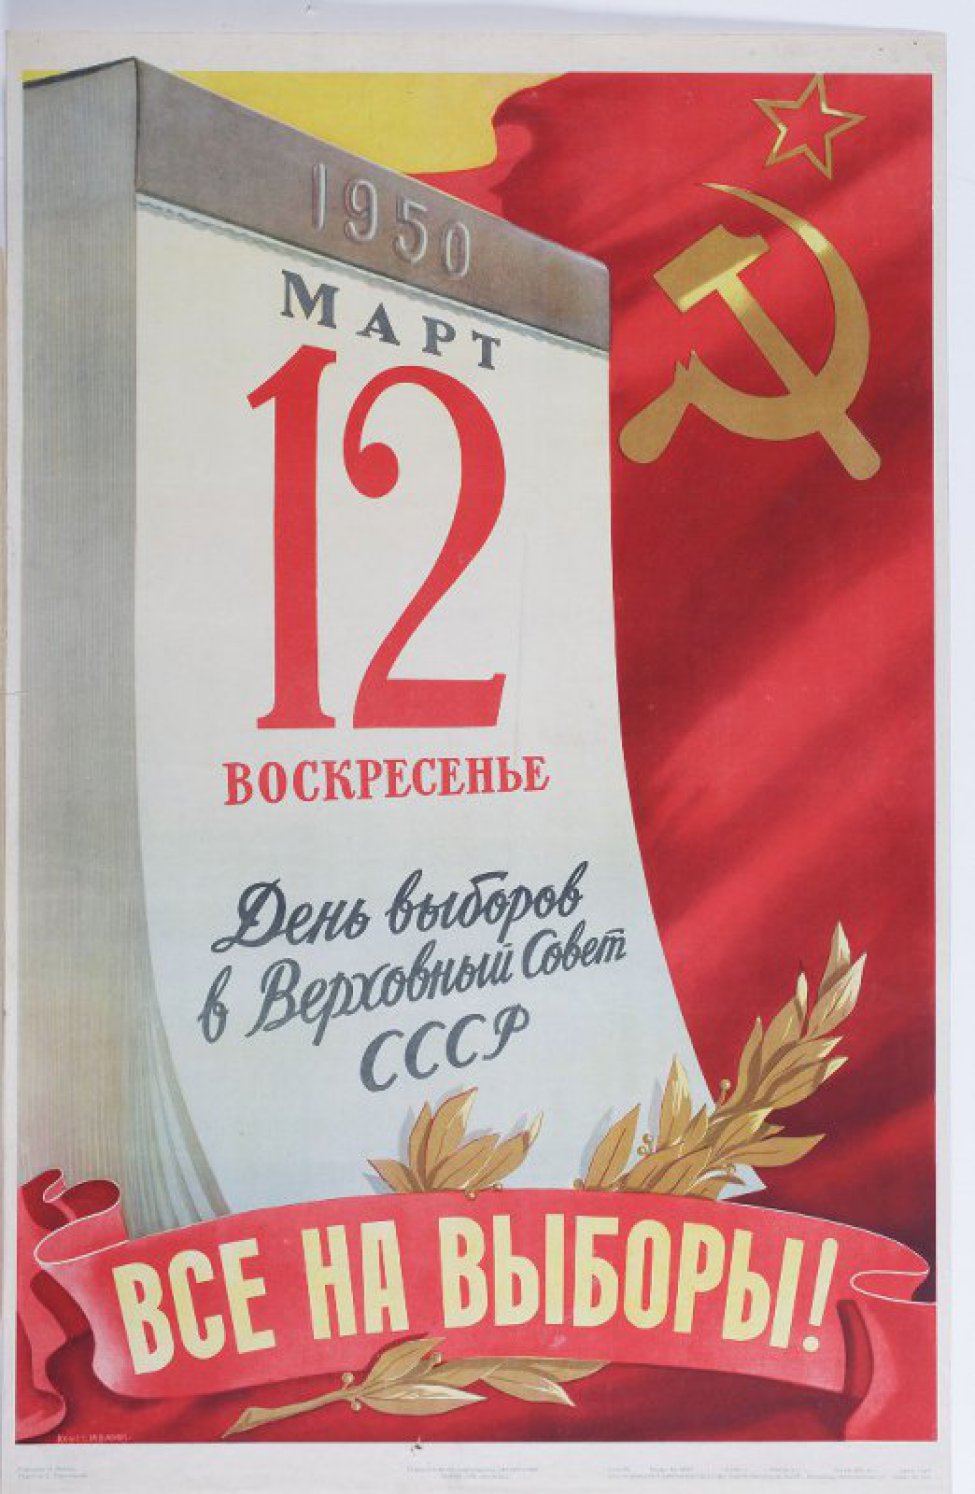 Изображен отрывной календарь: "1950. Март 12. Воскресенье". Ниже - "День выборов в Верховный Совет СССР". Справа вверху звезда, серп и молот. Внизу лента с надписью: "Все на выборы!" и лавровая ветка.